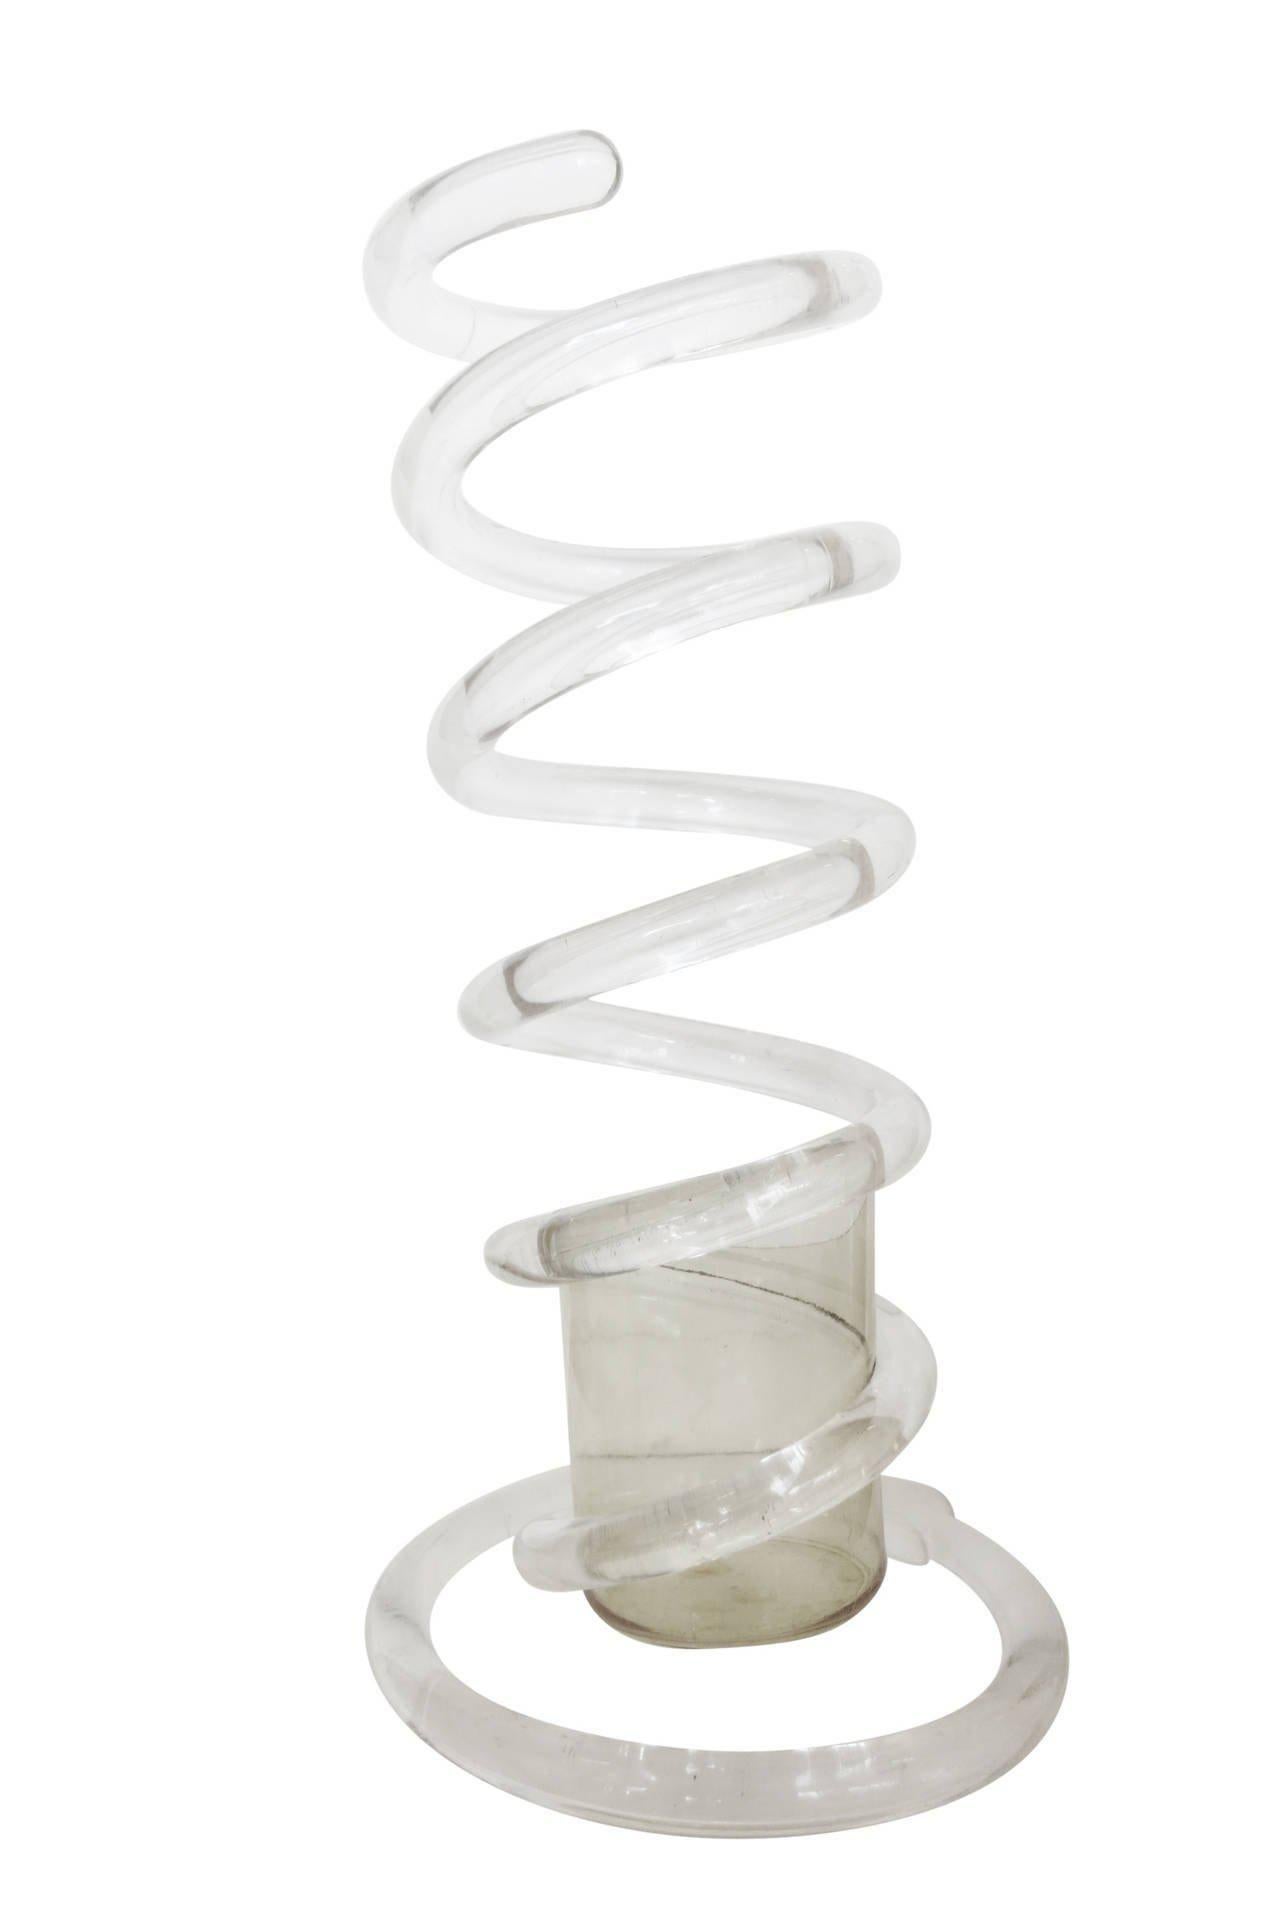 Parapluie Dorothy Thorpe Spiral Spring Stand Lucite. Cette œuvre d'art sculpturale en Lucite présente un morceau de Lucite filé en forme de ressort avec un petit support en bas.

Toutes les qualités qui ont fait de la Lucite un matériau séduisant